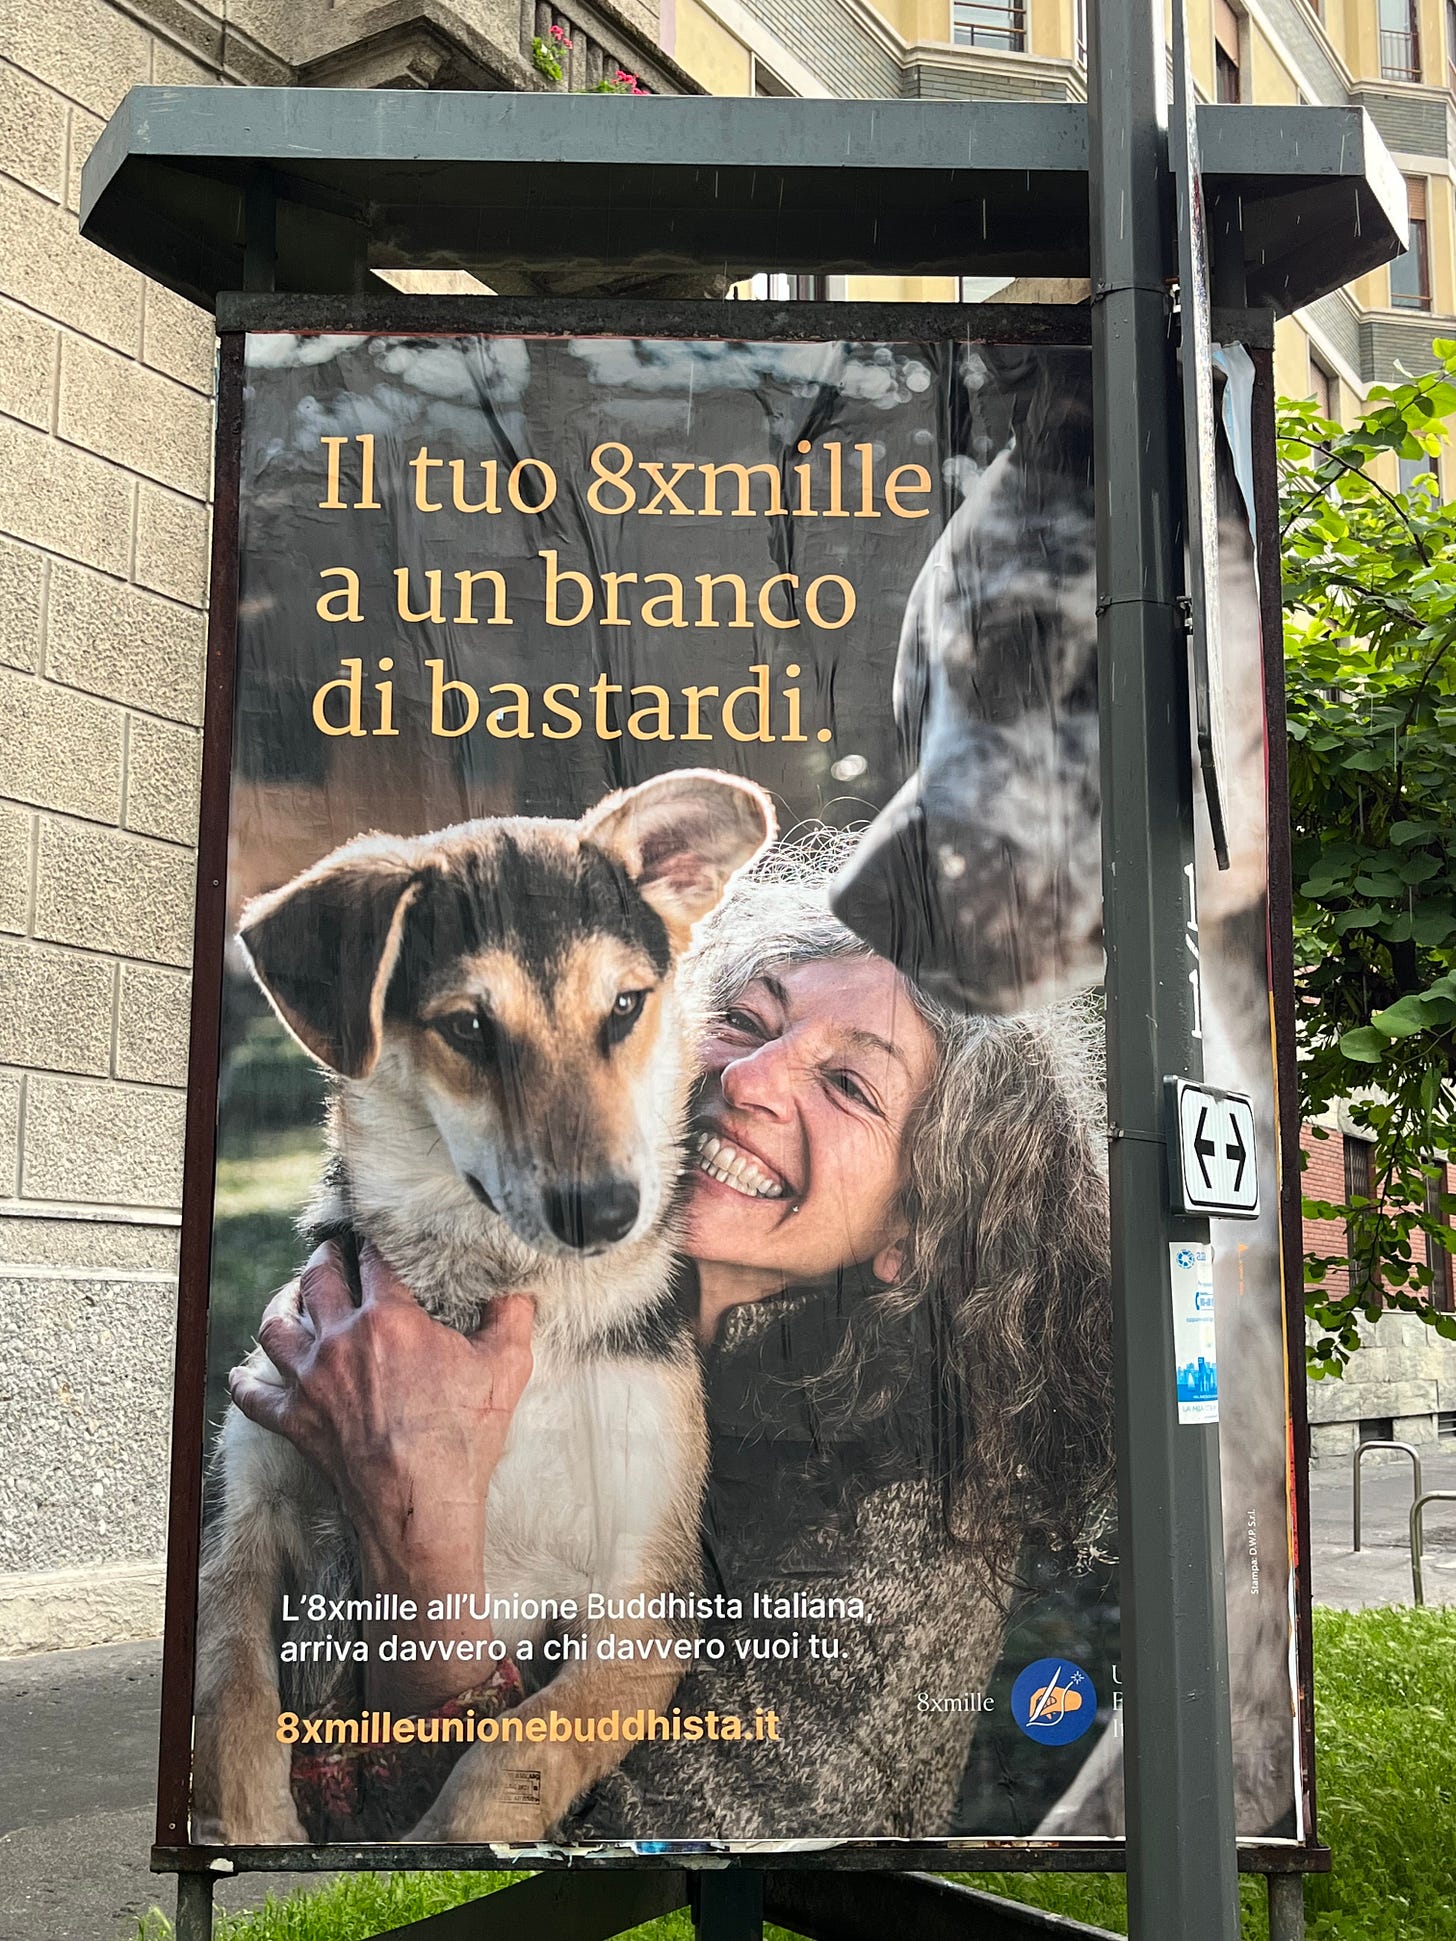 Il titolo recita "Il tuo 8xmille a un branco di bastardi". Nella foto si vede una donna con due cani.